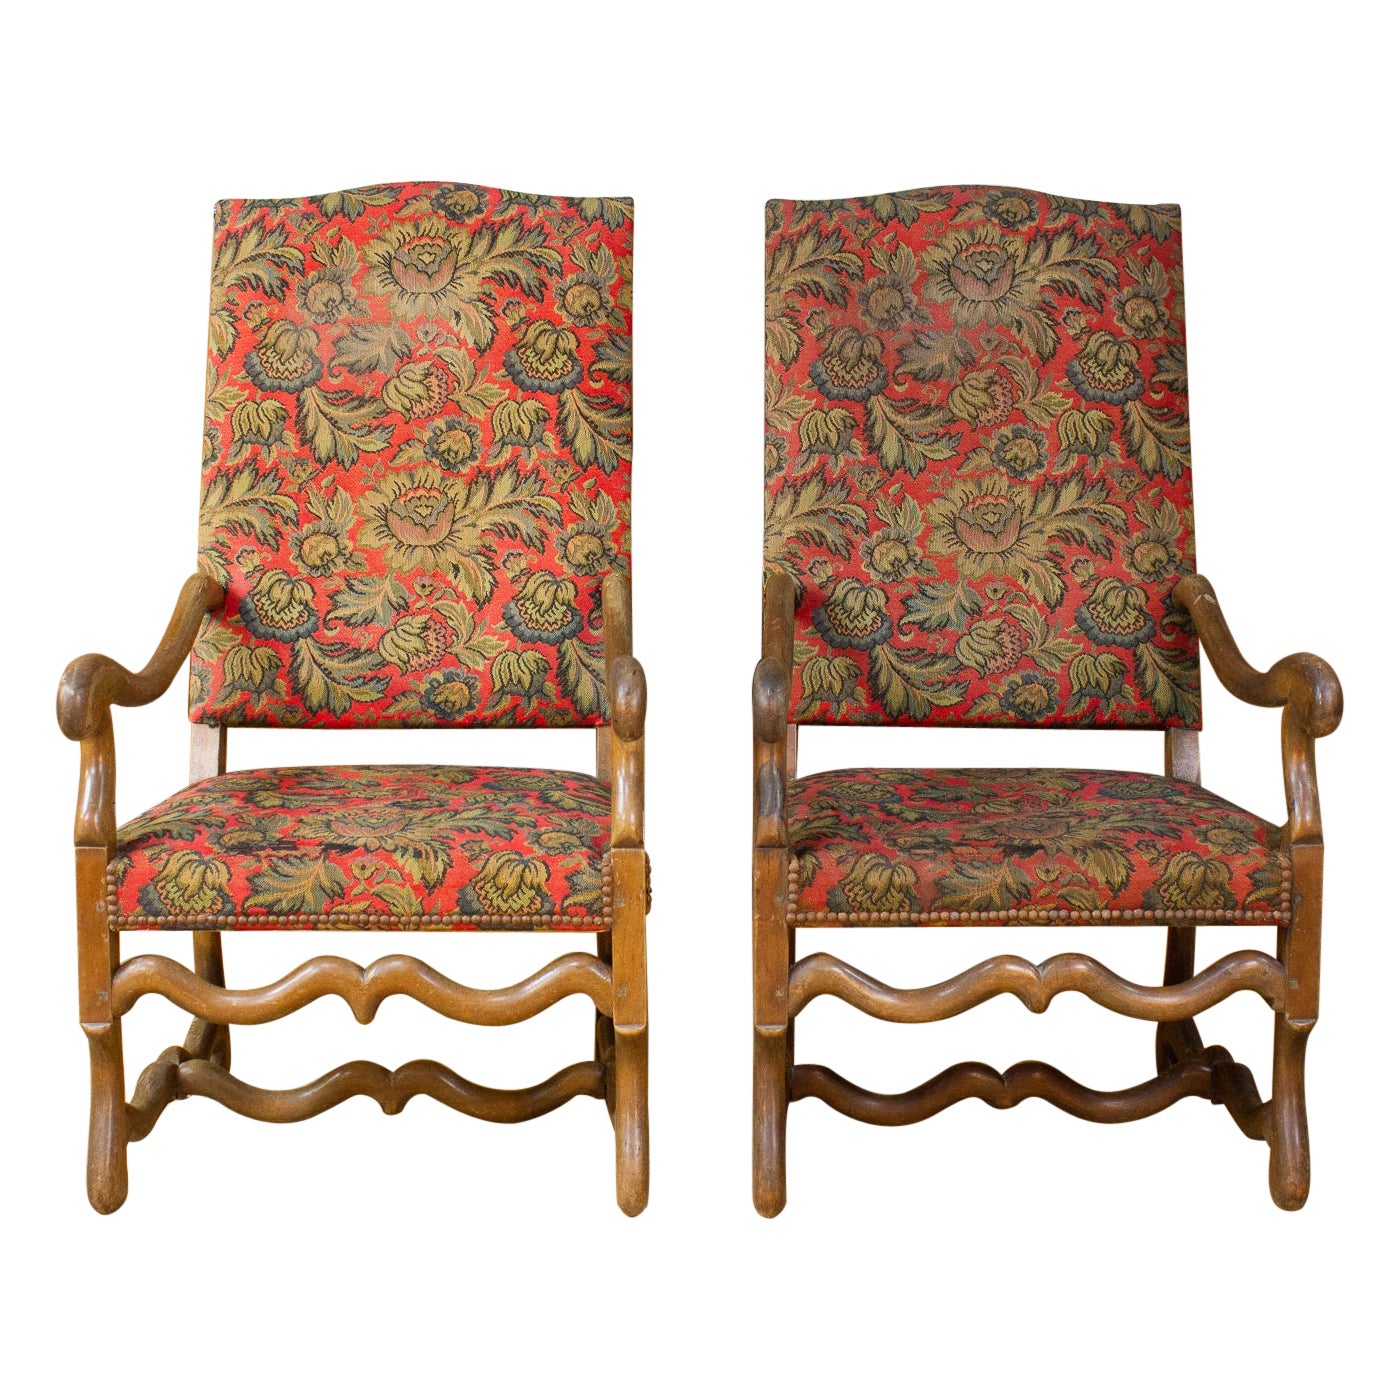 Paire de fauteuils français de style Louis XIV - 1800 19ème siècle - France  en vente